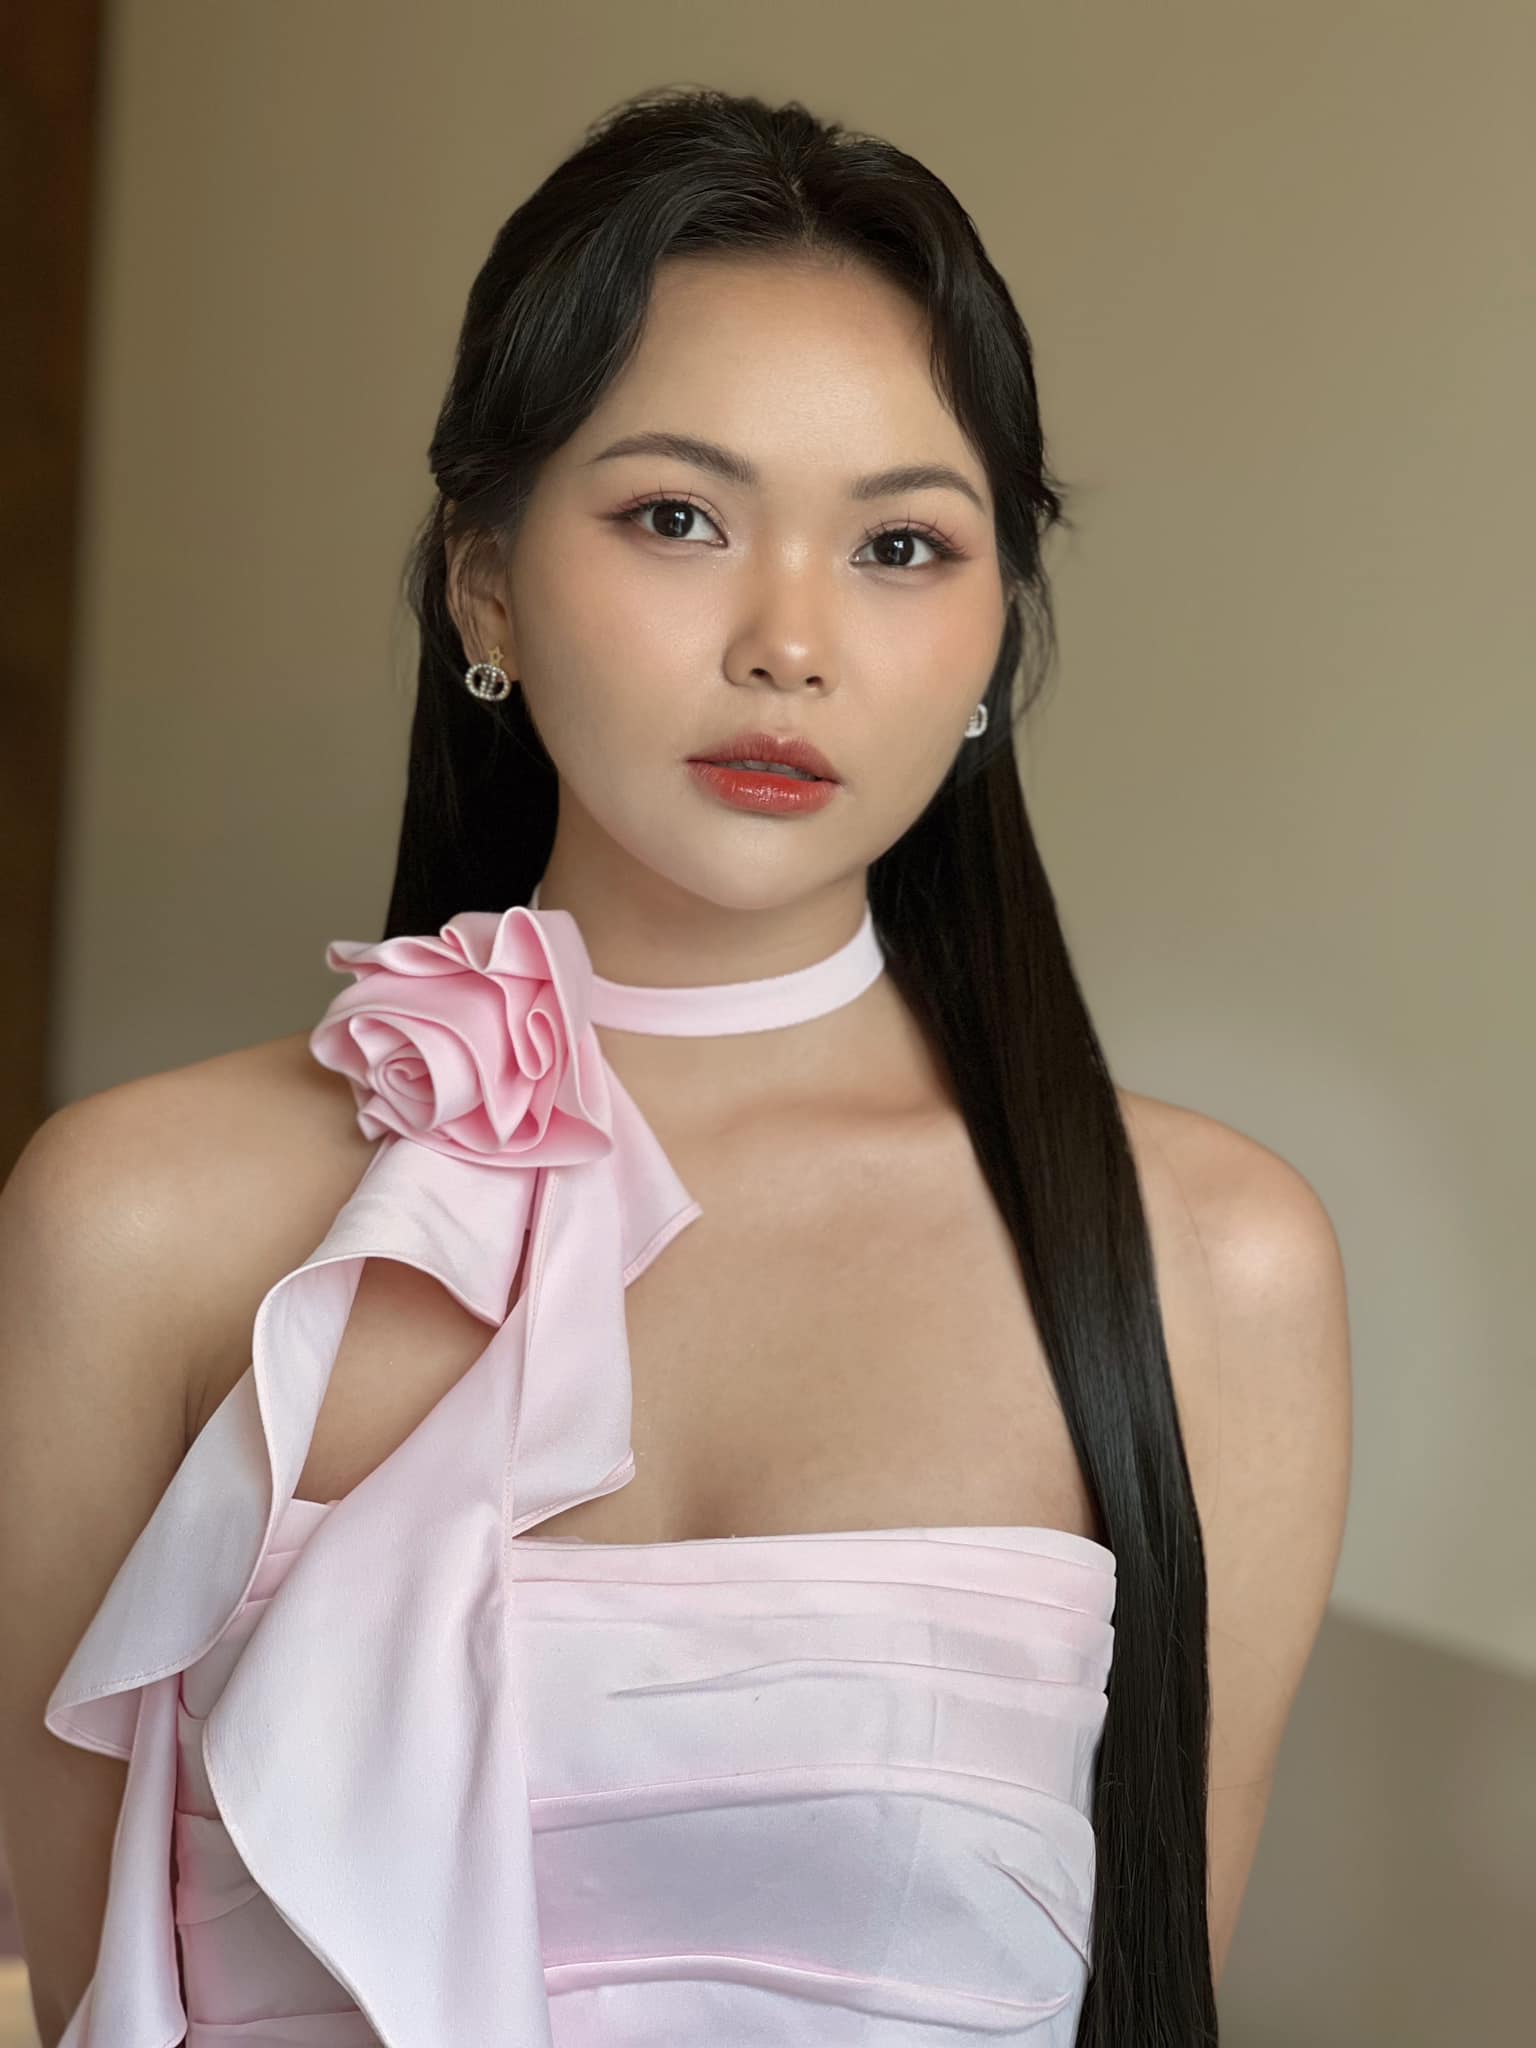 Hot girl 'Giọng ải giọng ai' giảm 6kg thi Miss World Vietnam 2023 - Ảnh 1.